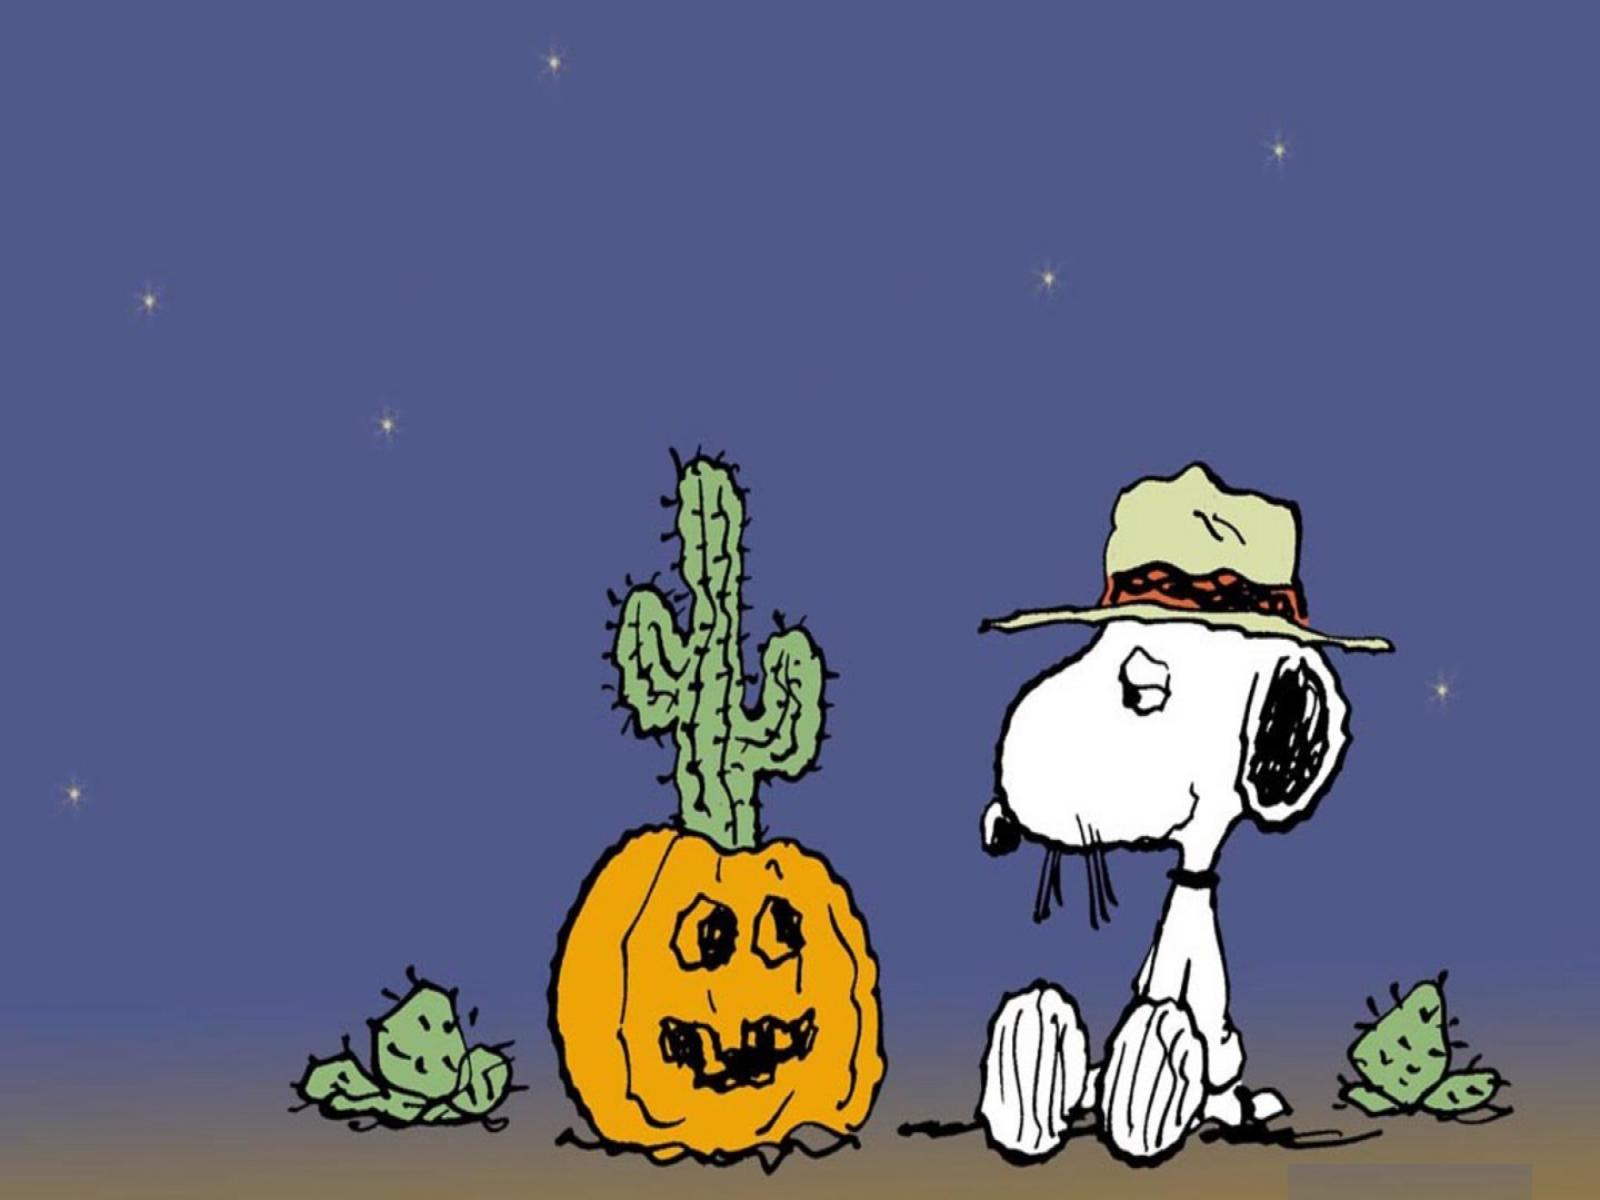 CHARLIE BROWN peanuts comics halloween snoopy f wallpaper 1600x1200 1600x1200